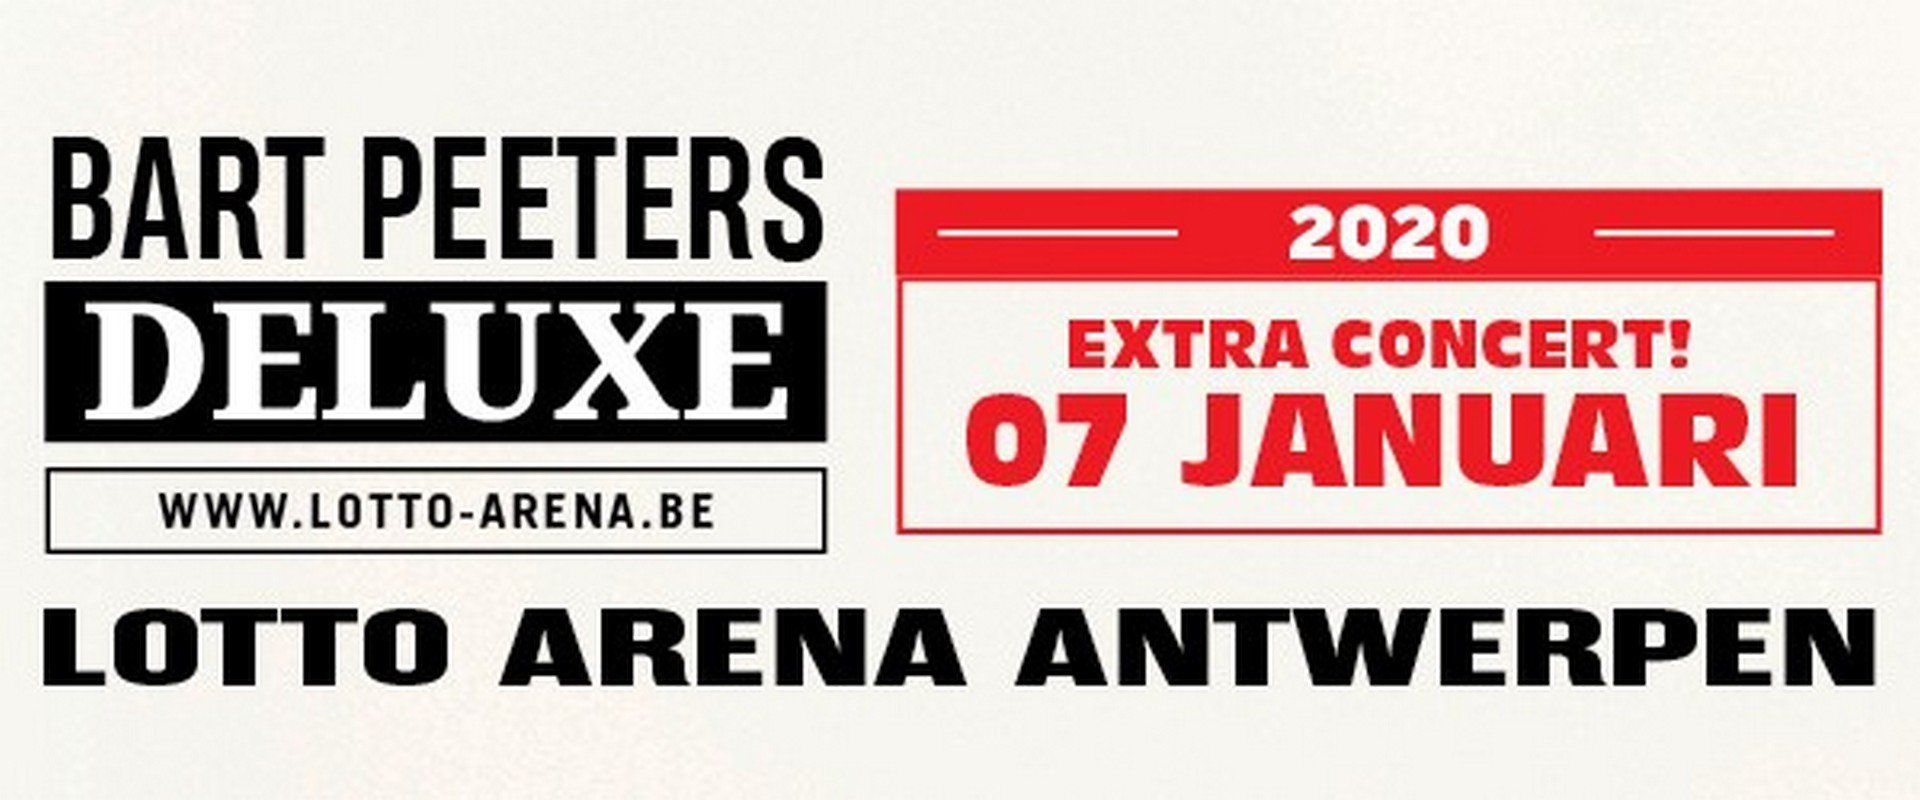 Bart Peeters kondigt achtste concert aan in Lotto Arena - Bart Peeters Deluxe 7 jan